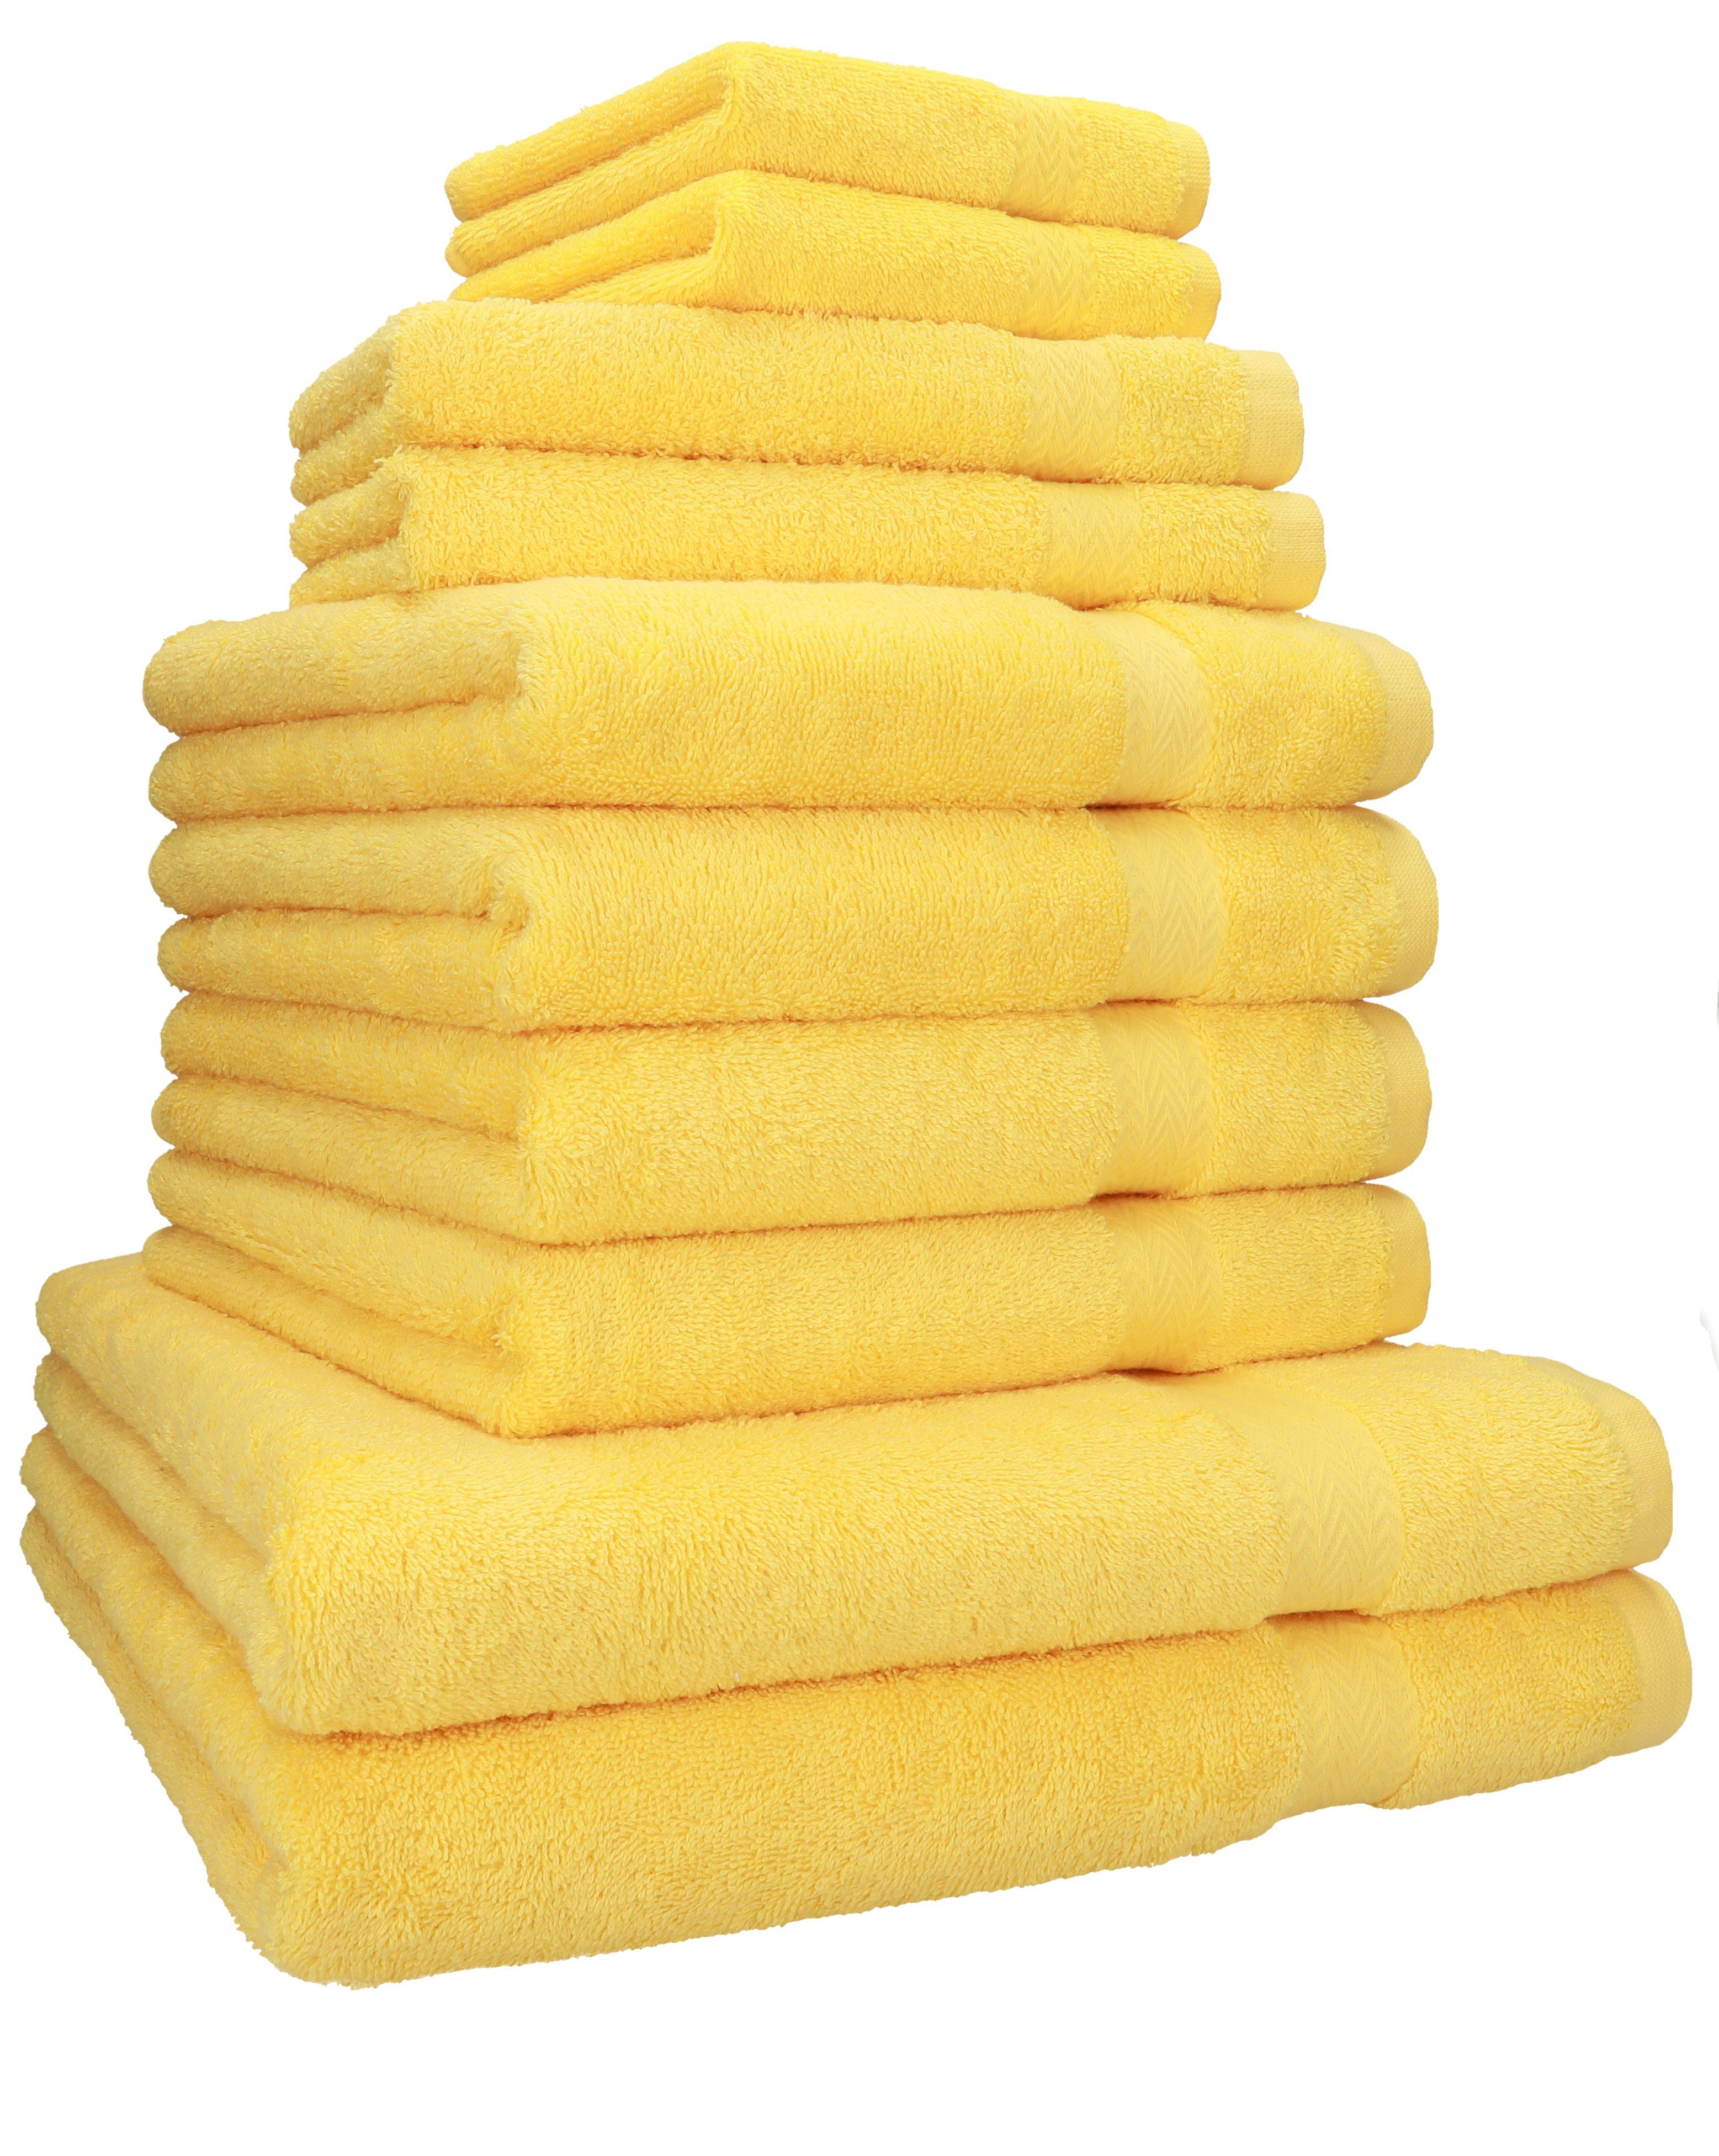 Betz Handtuch Set 10-TLG. Handtuch-Set Classic 100% Baumwolle 2 Duschtücher 4 Handtücher 2 Gästetücher 2 Seiftücher, 100% Baumwolle, (10-tlg) gelb